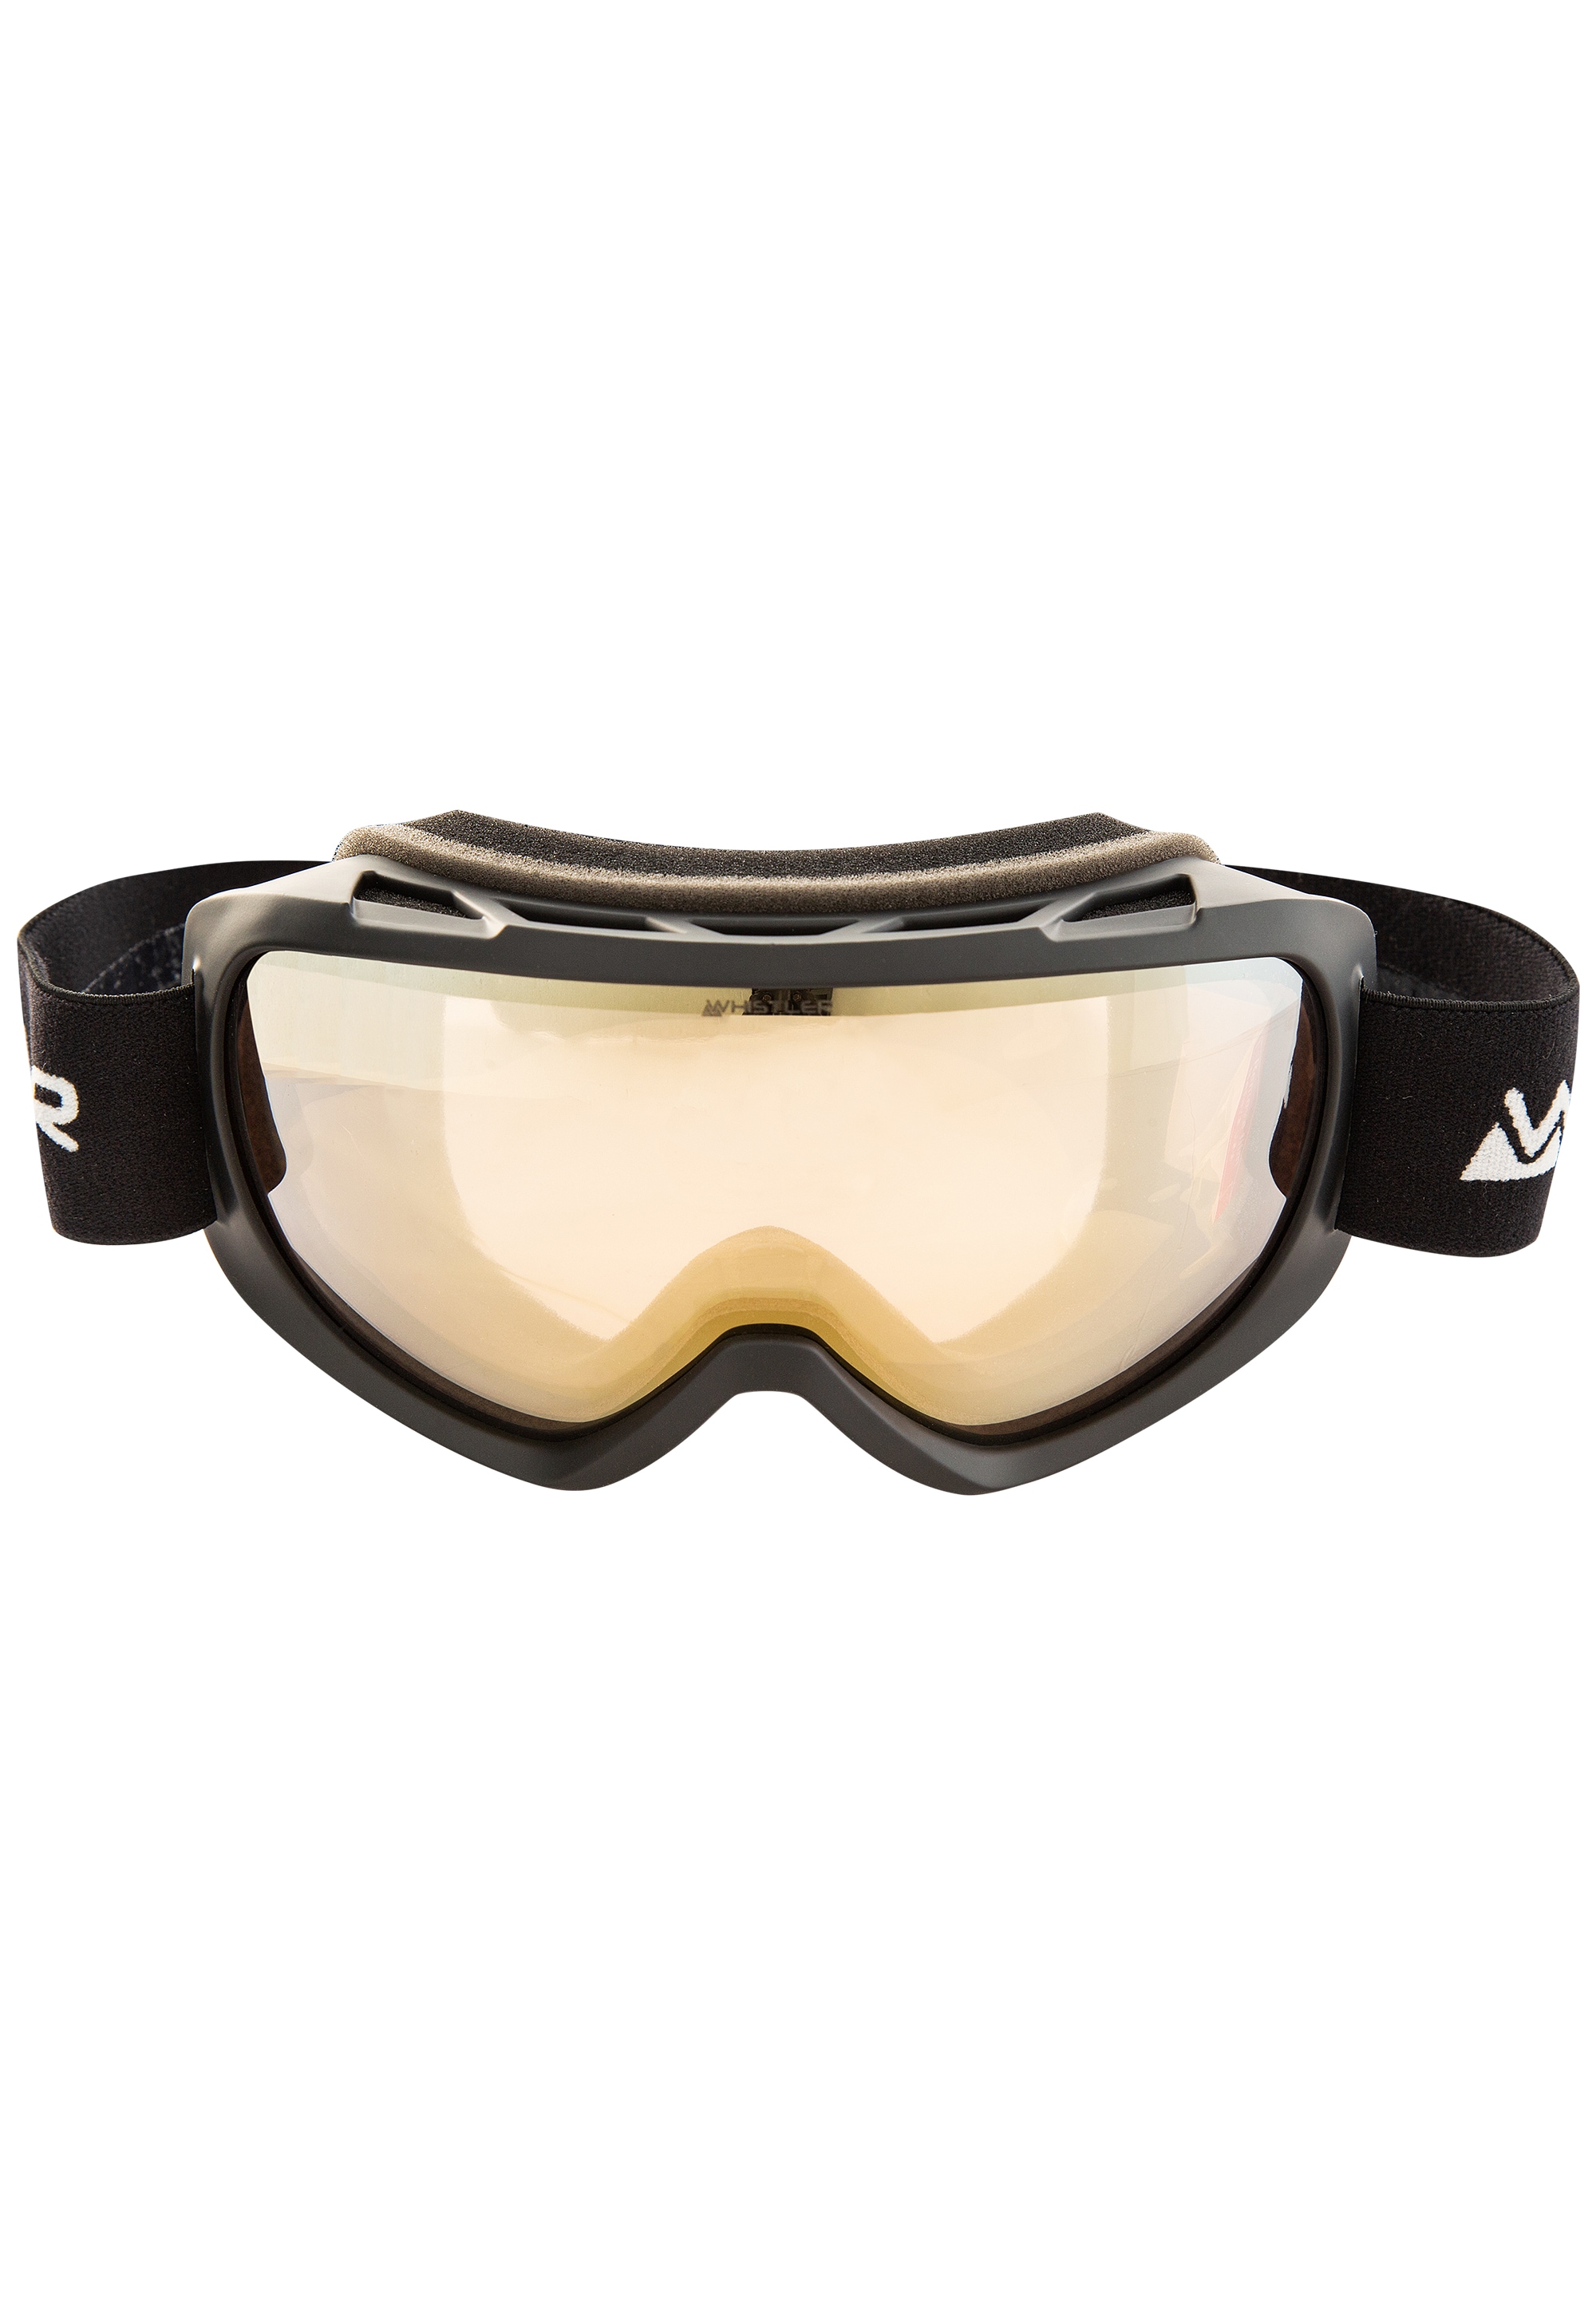 WHISTLER Skibrille »WS3.72 Clear BAUR Rechnung auf Goggle«, mit Anti- Beschlag-Beschichtung | praktischer Ski Vision